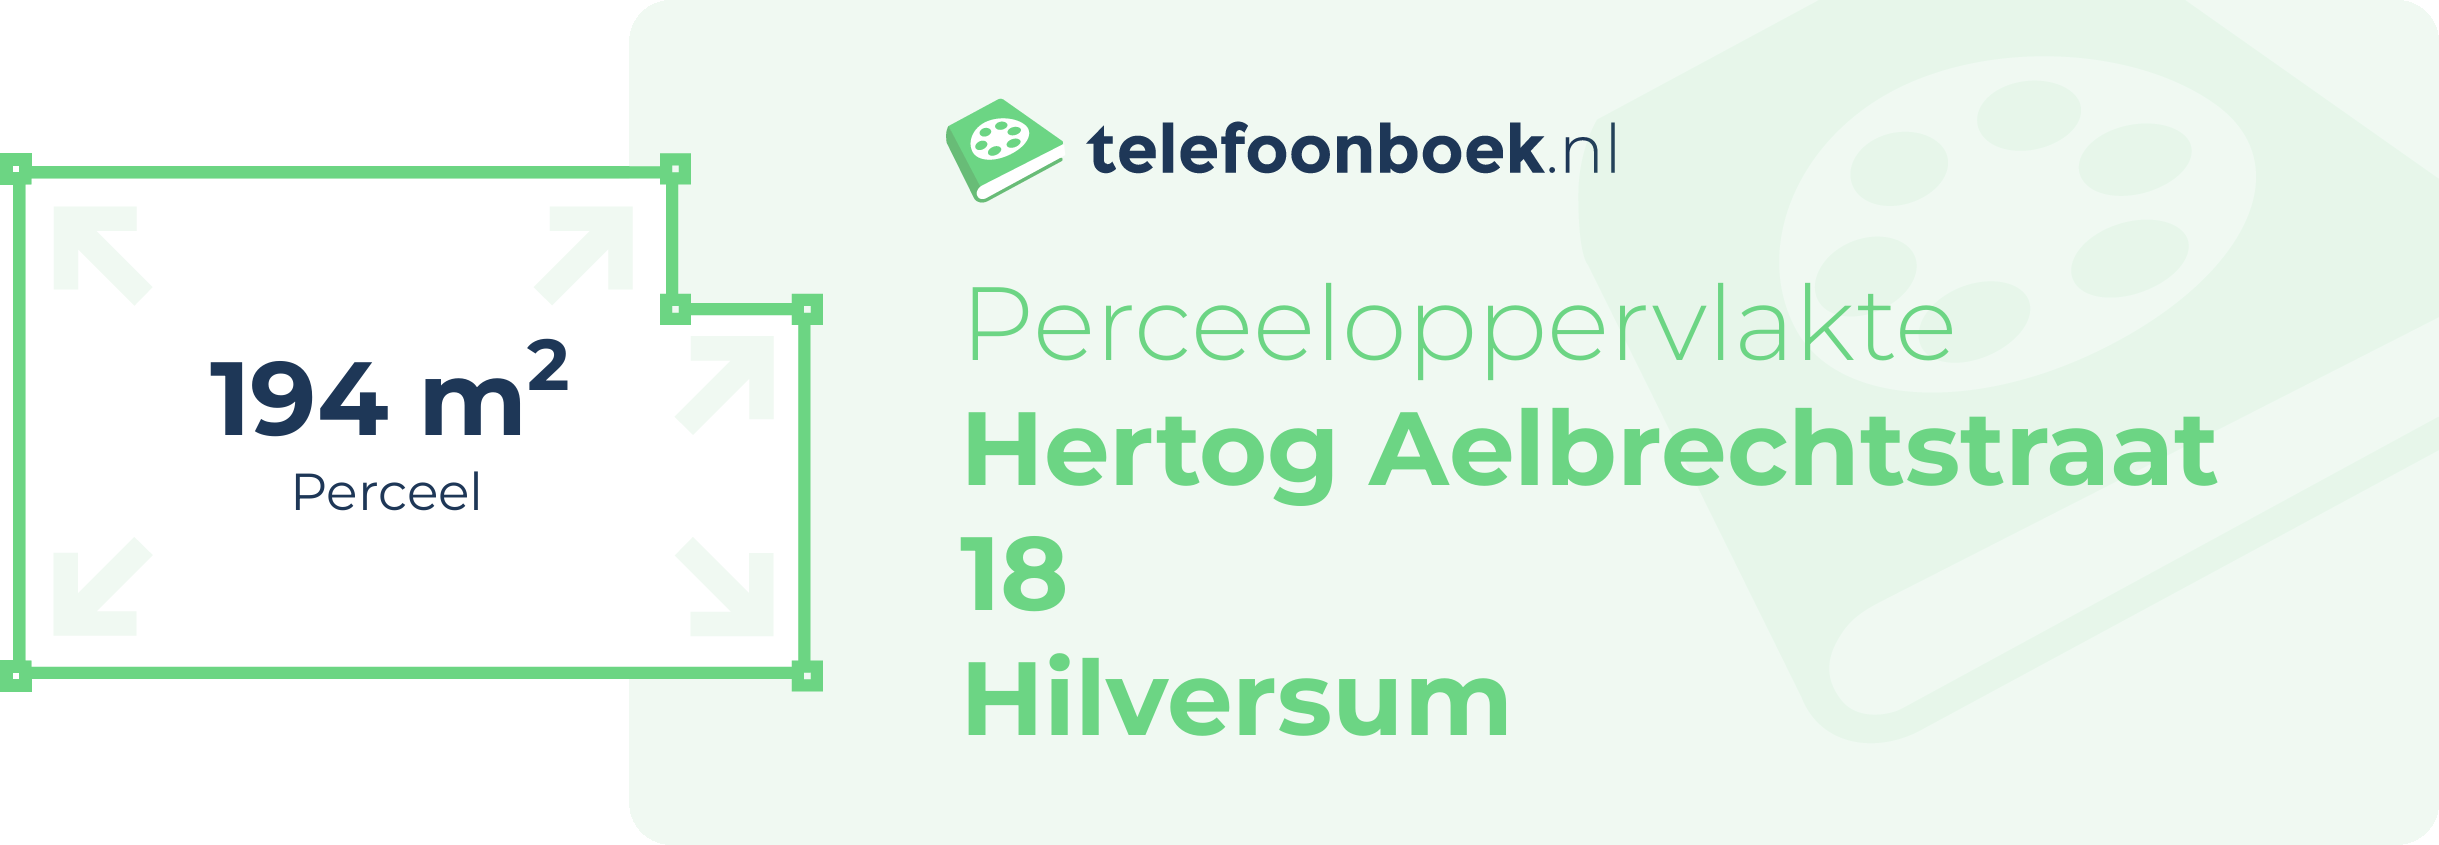 Perceeloppervlakte Hertog Aelbrechtstraat 18 Hilversum